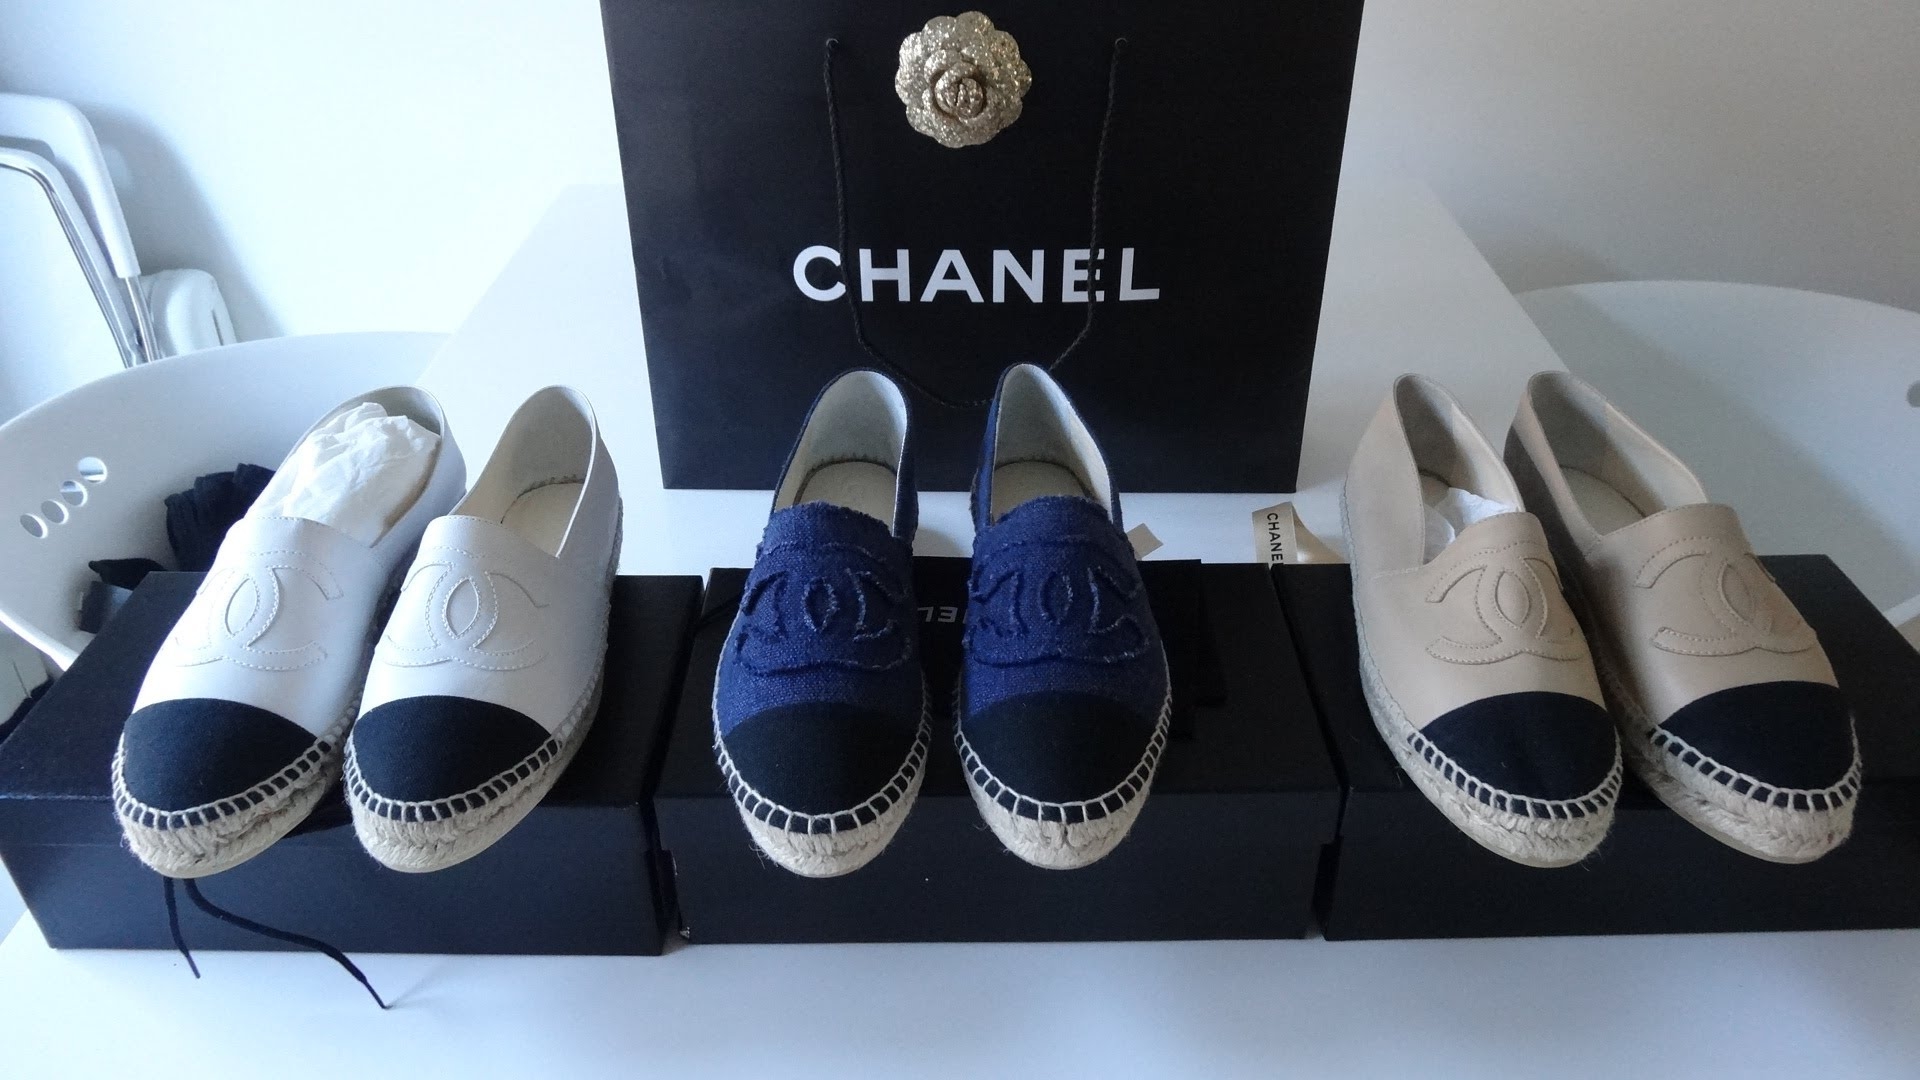 โดยการออกแบบรองเท้าคู่นี้ก็เป็นแนวทางเดียวกันของเหล่าดีไซน์เนอร์ชื่อดังต่างๆที่ออกแบบมาเป็นแนวเดียวกันอย่าง CHANEL ESPADRILLE ค่ะ โดยที่ราคาของรองเท้า Chanel มีราคาถึง 1,150 USD ซึ่งเทียบแล้วรองเท้า Tory Burch ถือเป็นแบรนหรู สินค้าคุณภาพและการออกแบบมาได้อย่างดีเยี่ยมไม่แพ้แบรนอื่นๆค่ะ 